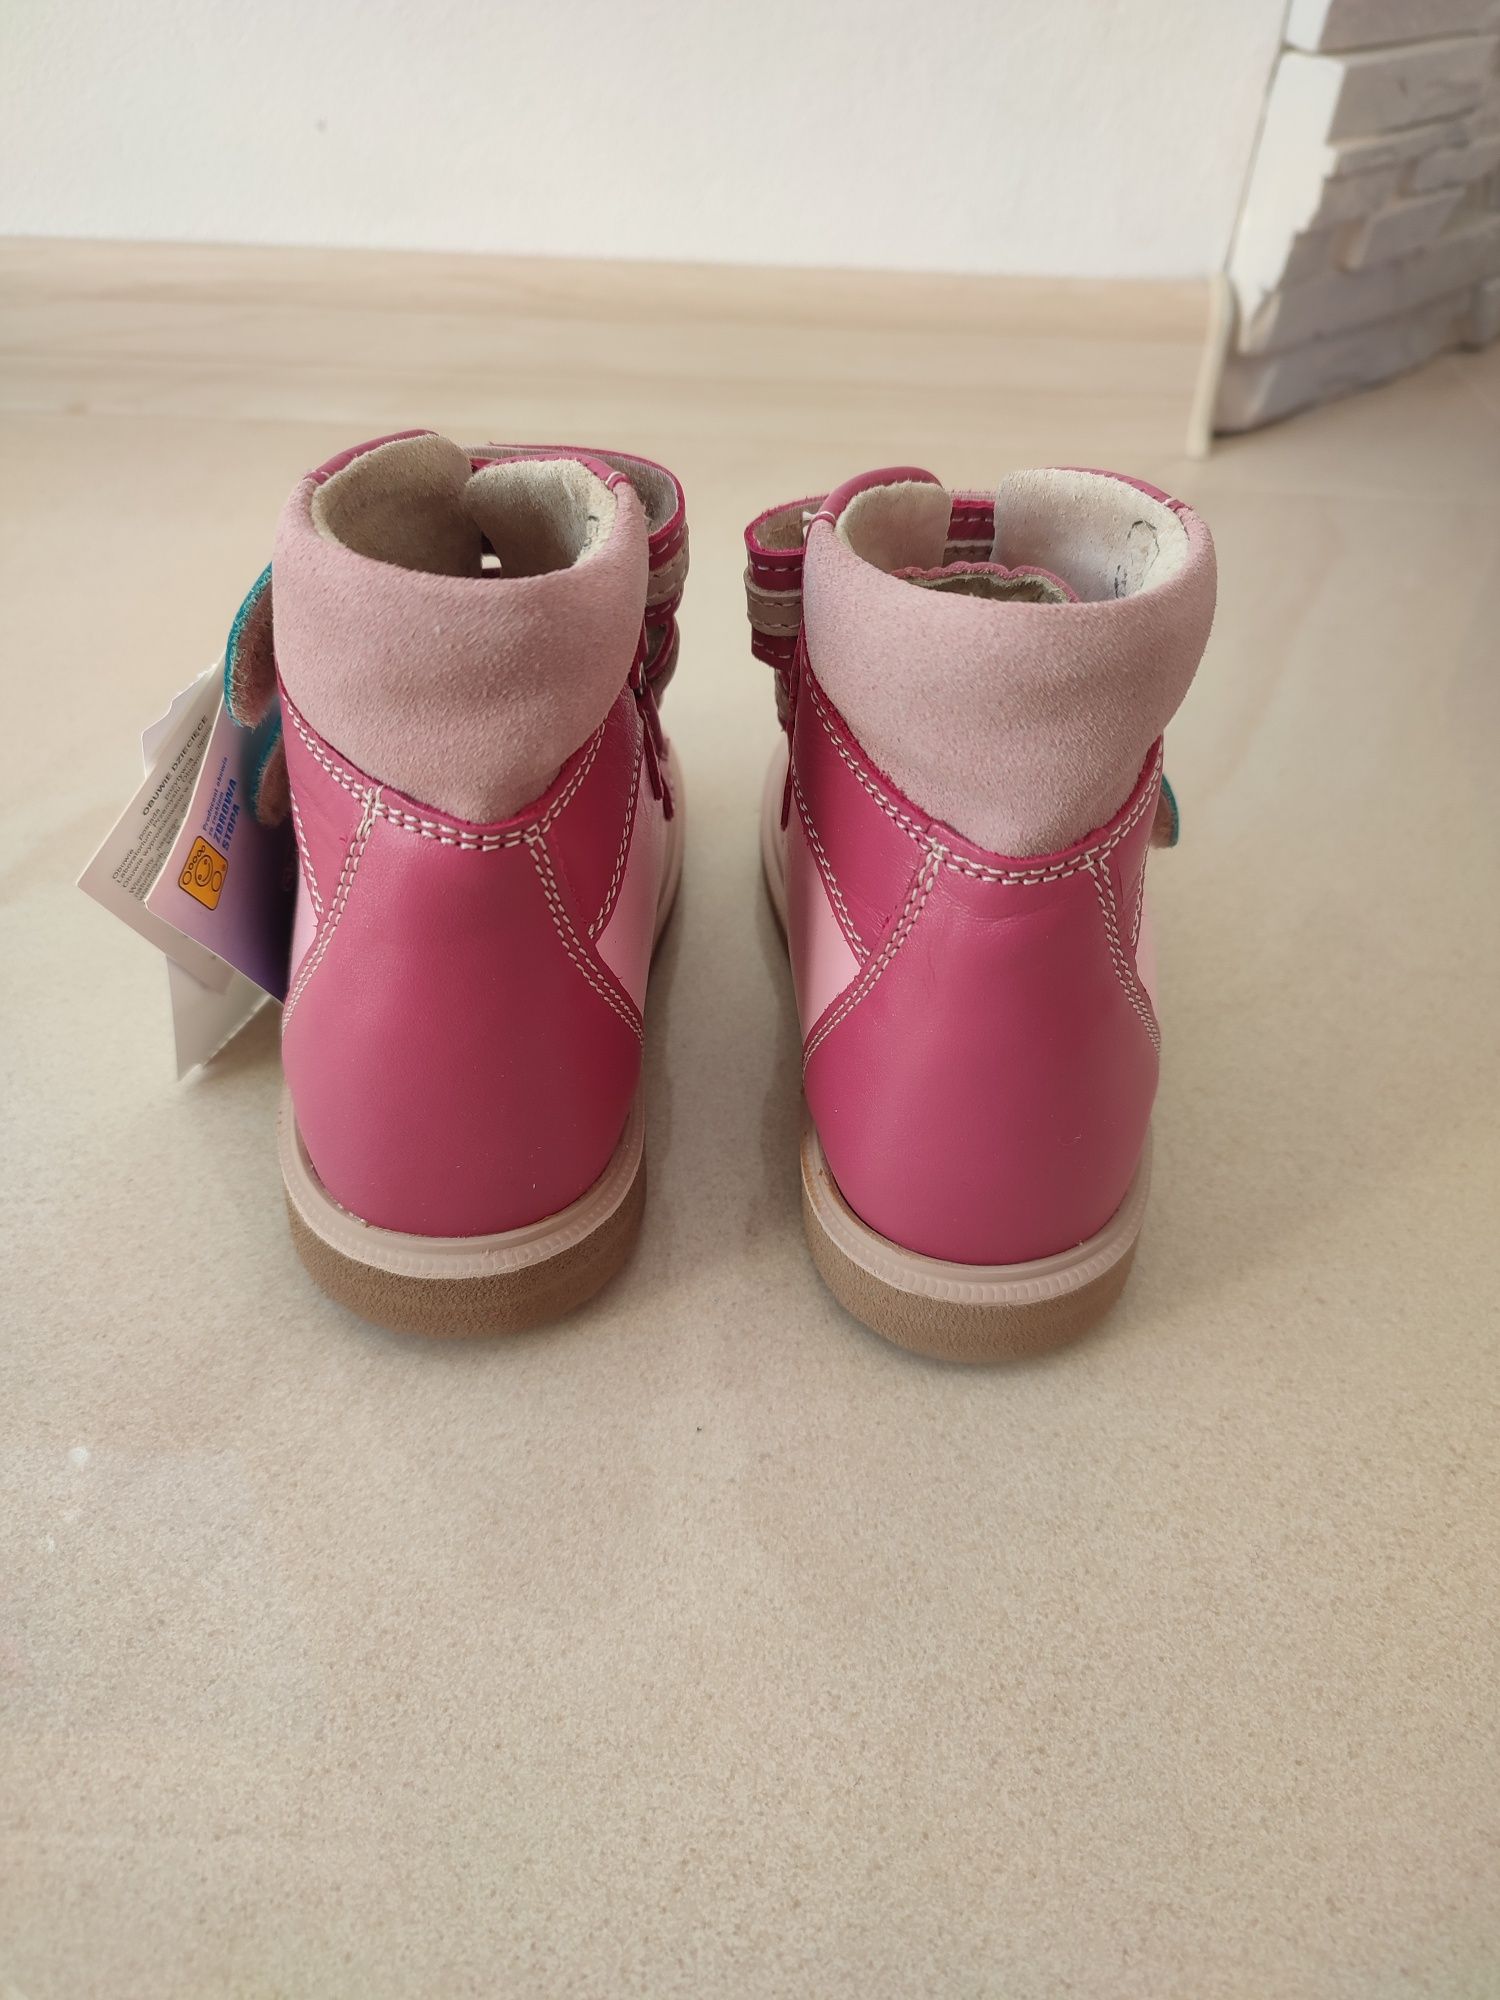 Nowe buty dziecięce skórzane w rozmiarze 24 LUB 25 !